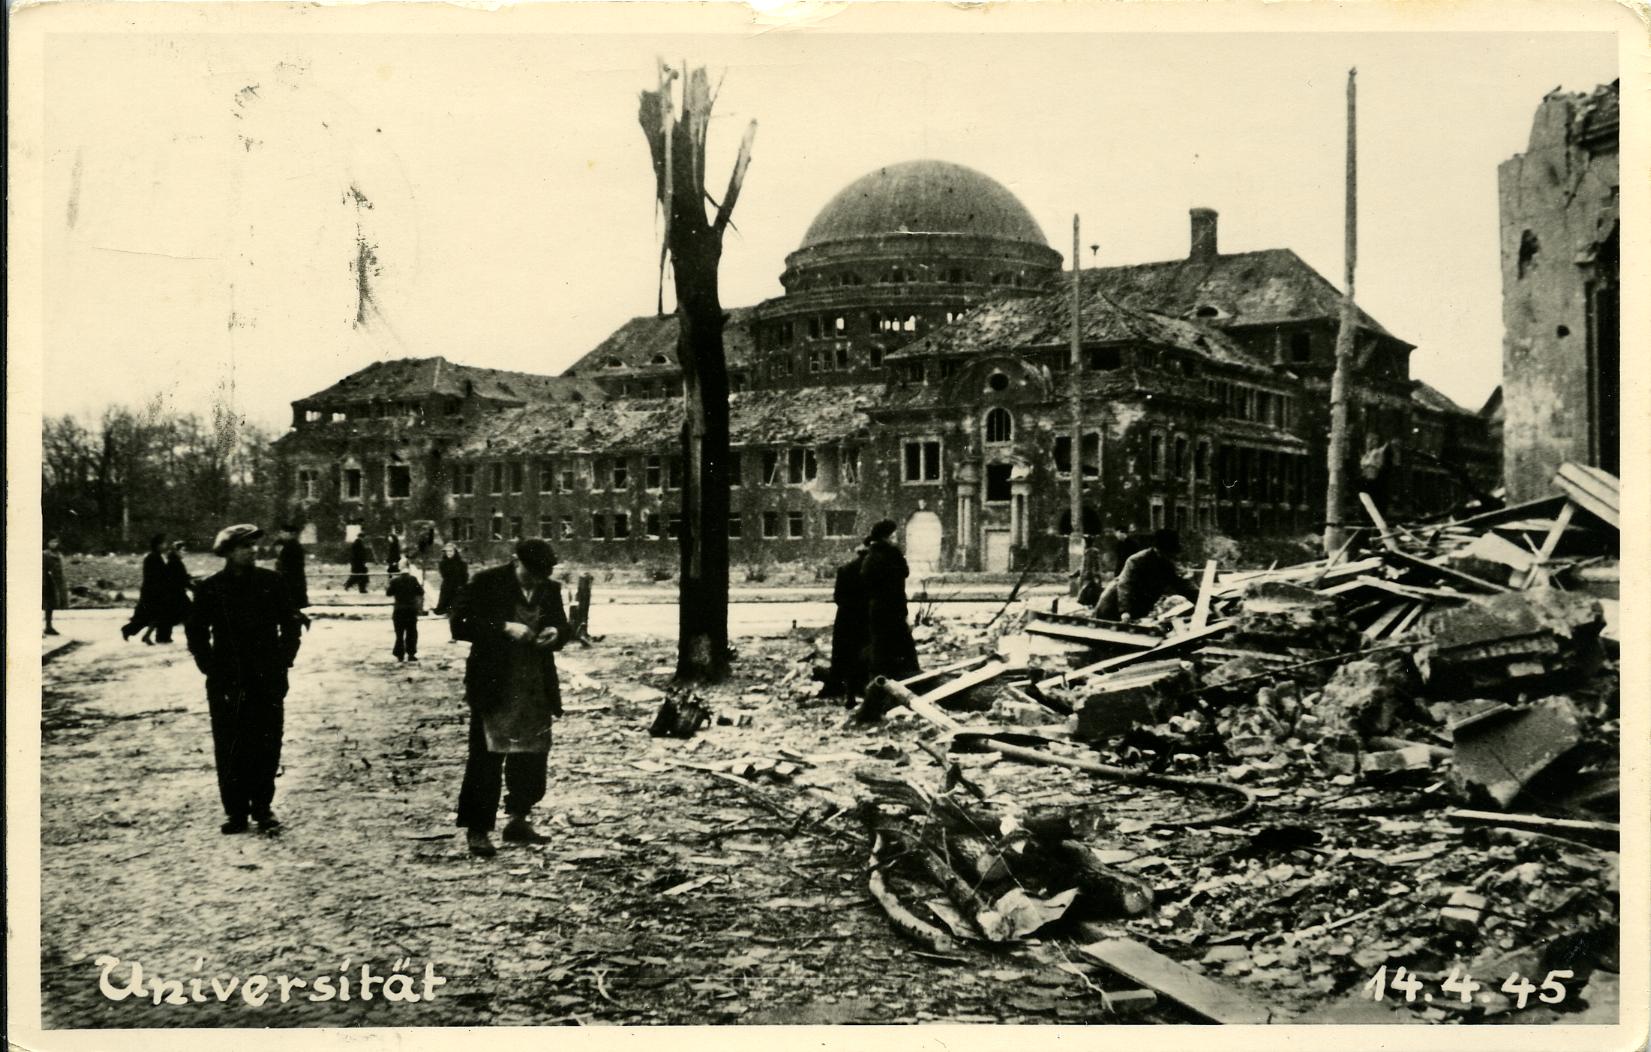 [Fotografie: Die nach Bombenangriff zerstörte Universität in Hamburg, 1945]